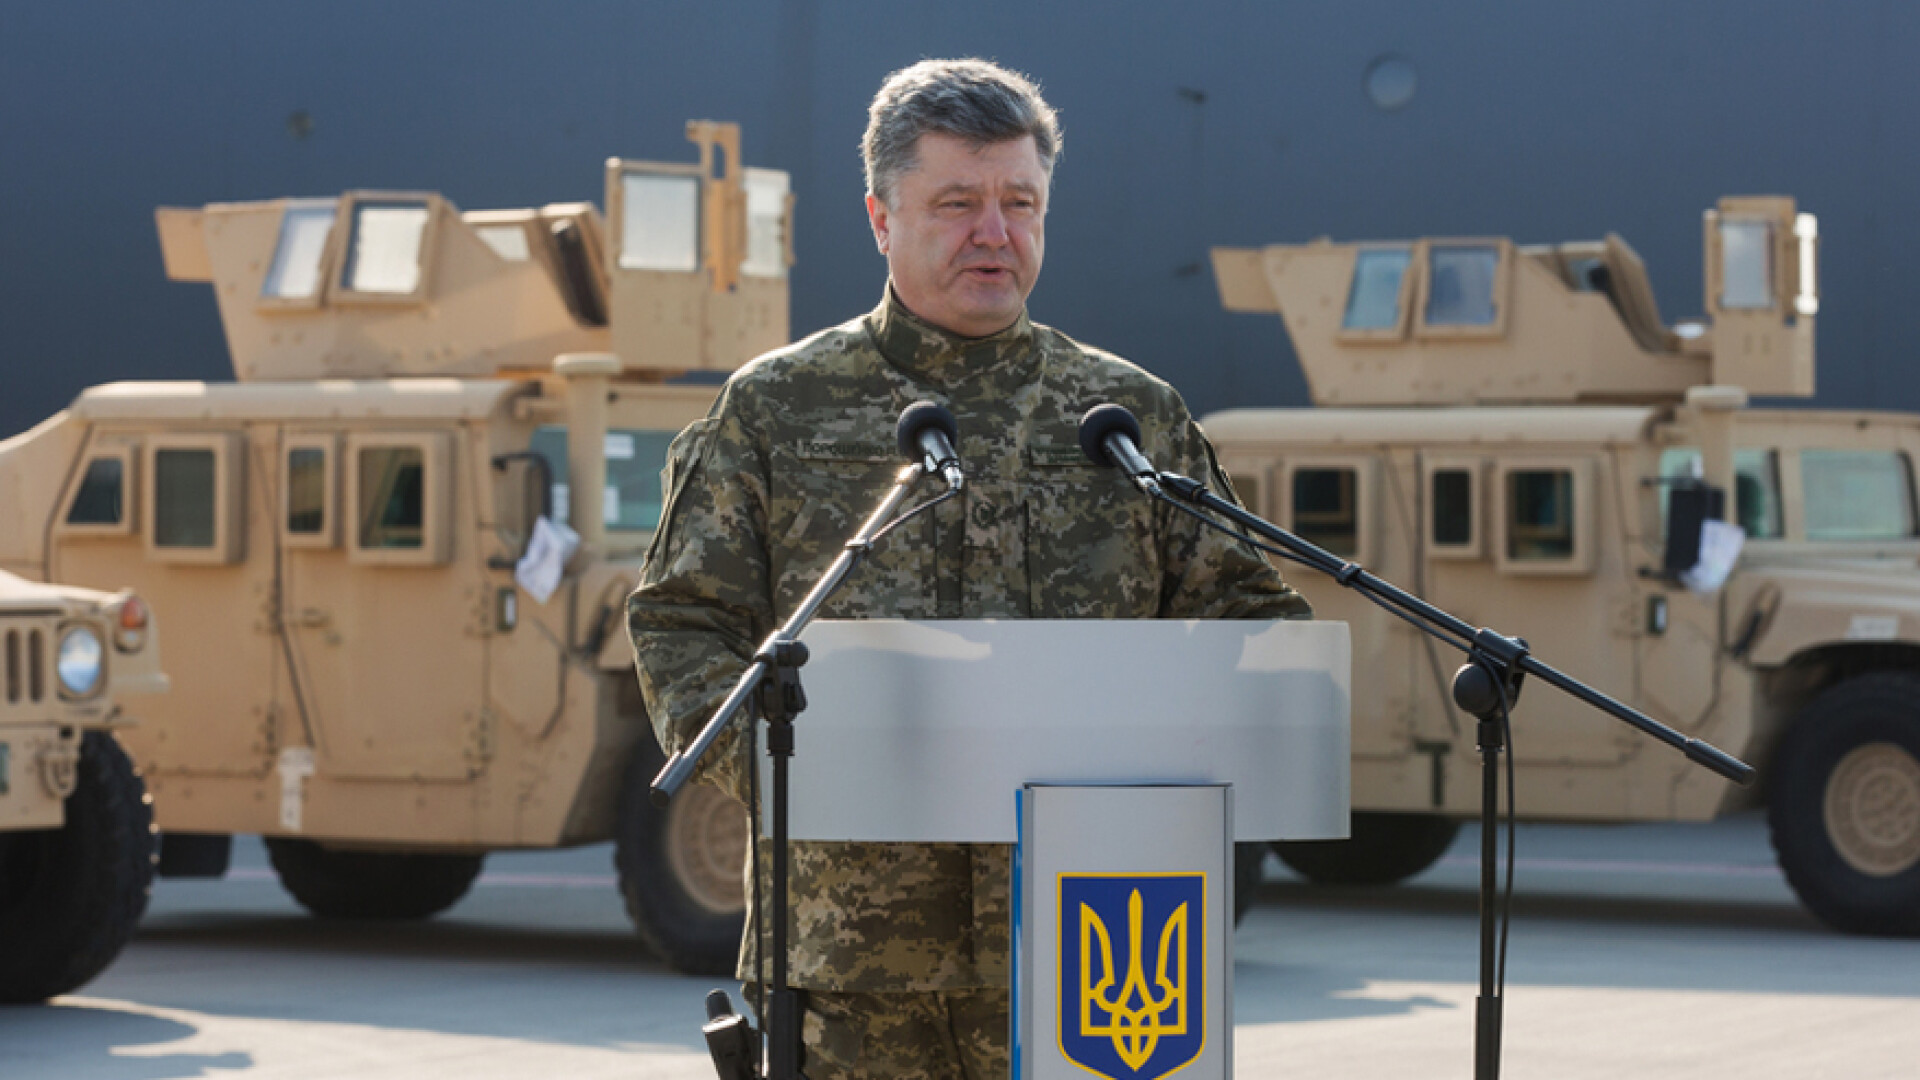 presedintele Ucrainei Petro Porosenko in uniforma, in fata unor Humvee-uri